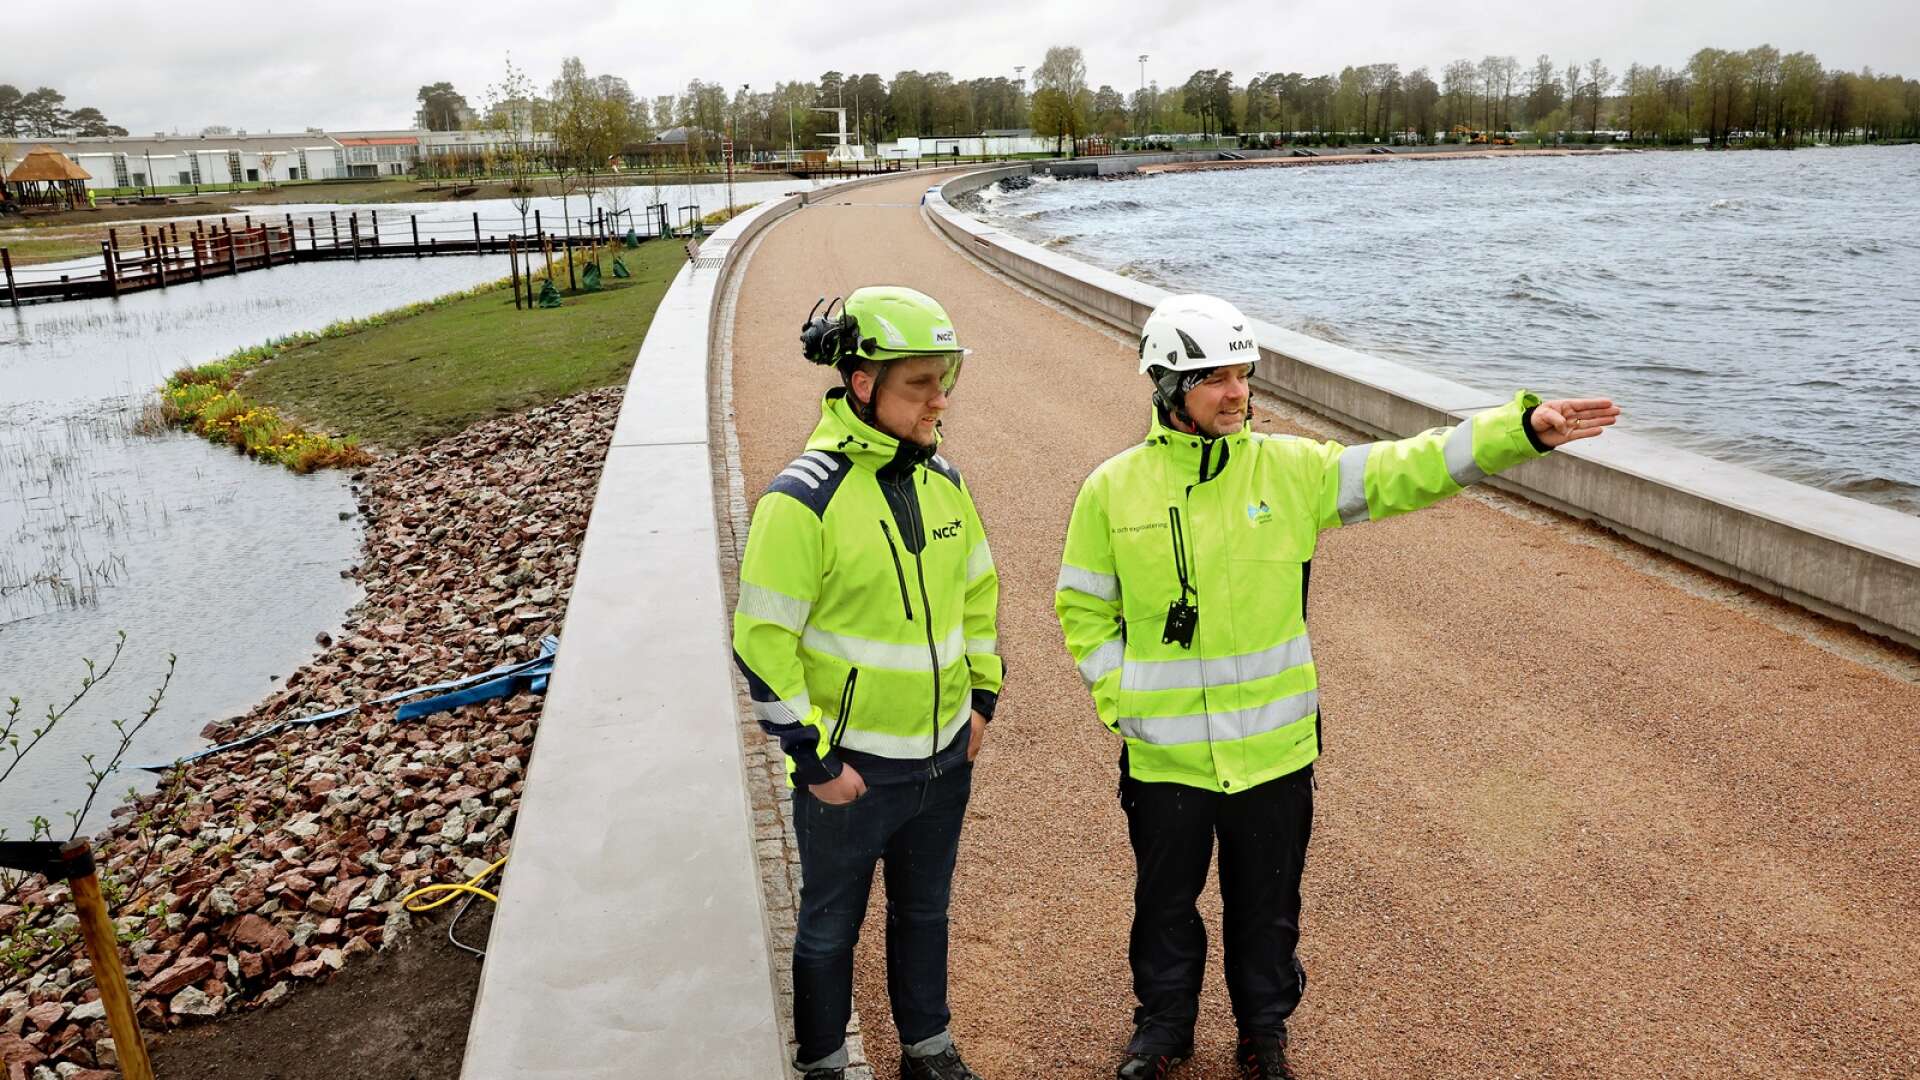 Snart invigs Lidköpings mångmiljonprojekt – Framnäs strandpark. Magnus Klint och Ronnie Hollsten visar runt inför öppningen om en månad.